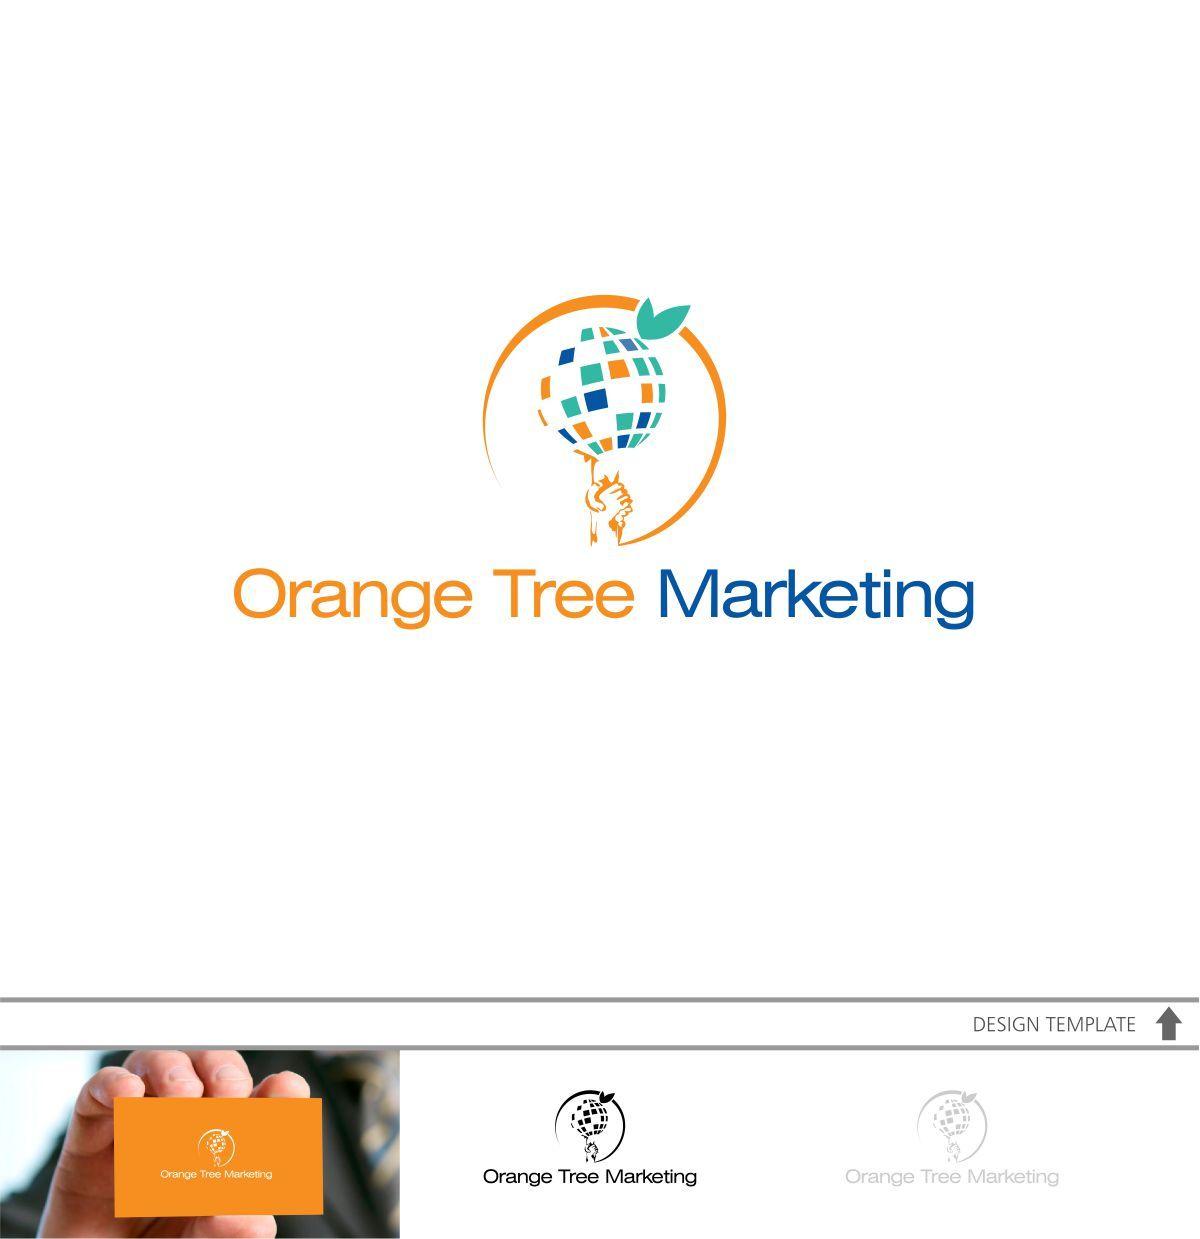 Orange Tree Circle Logo - Modern, Elegant, Digital Marketing Logo Design for Orange Tree